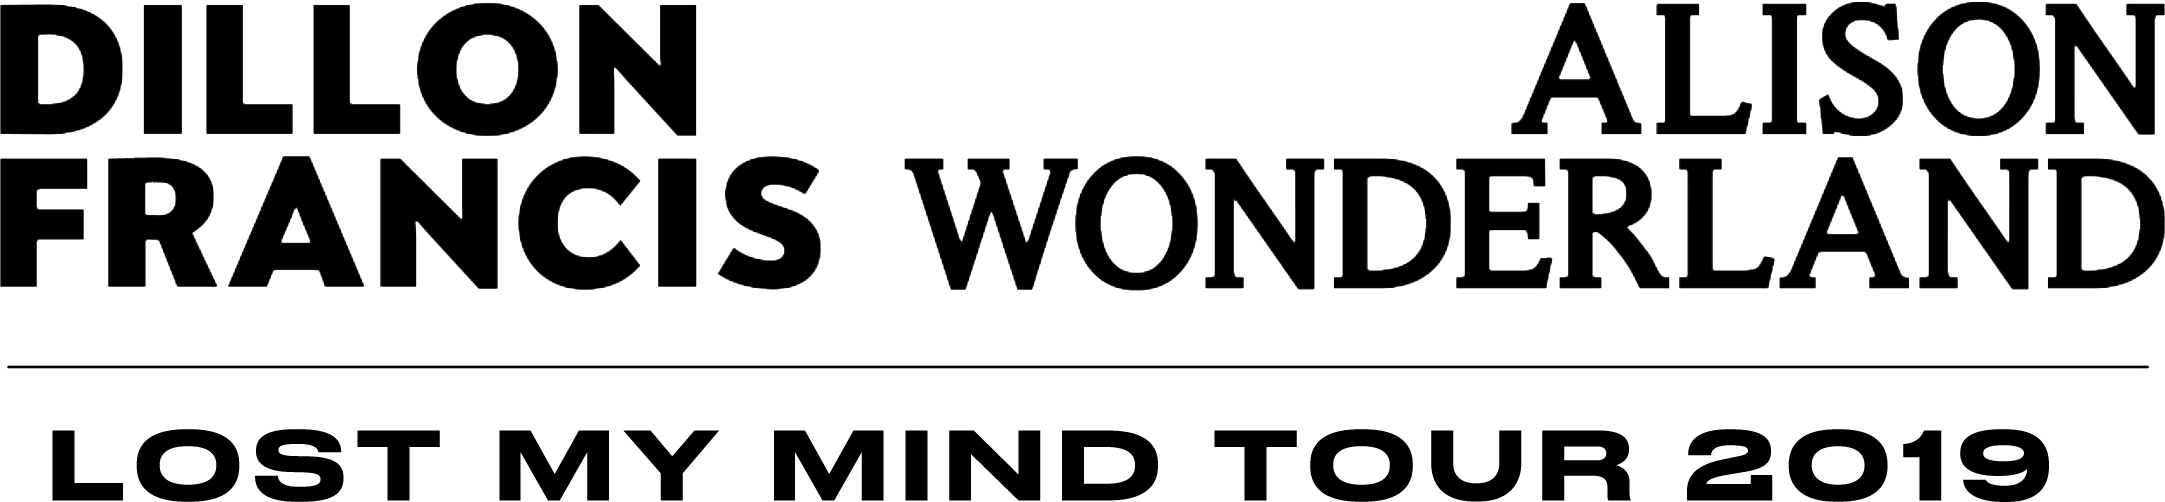 Dillon Francis Alison Wonderland Lost My Mind Tour 2019